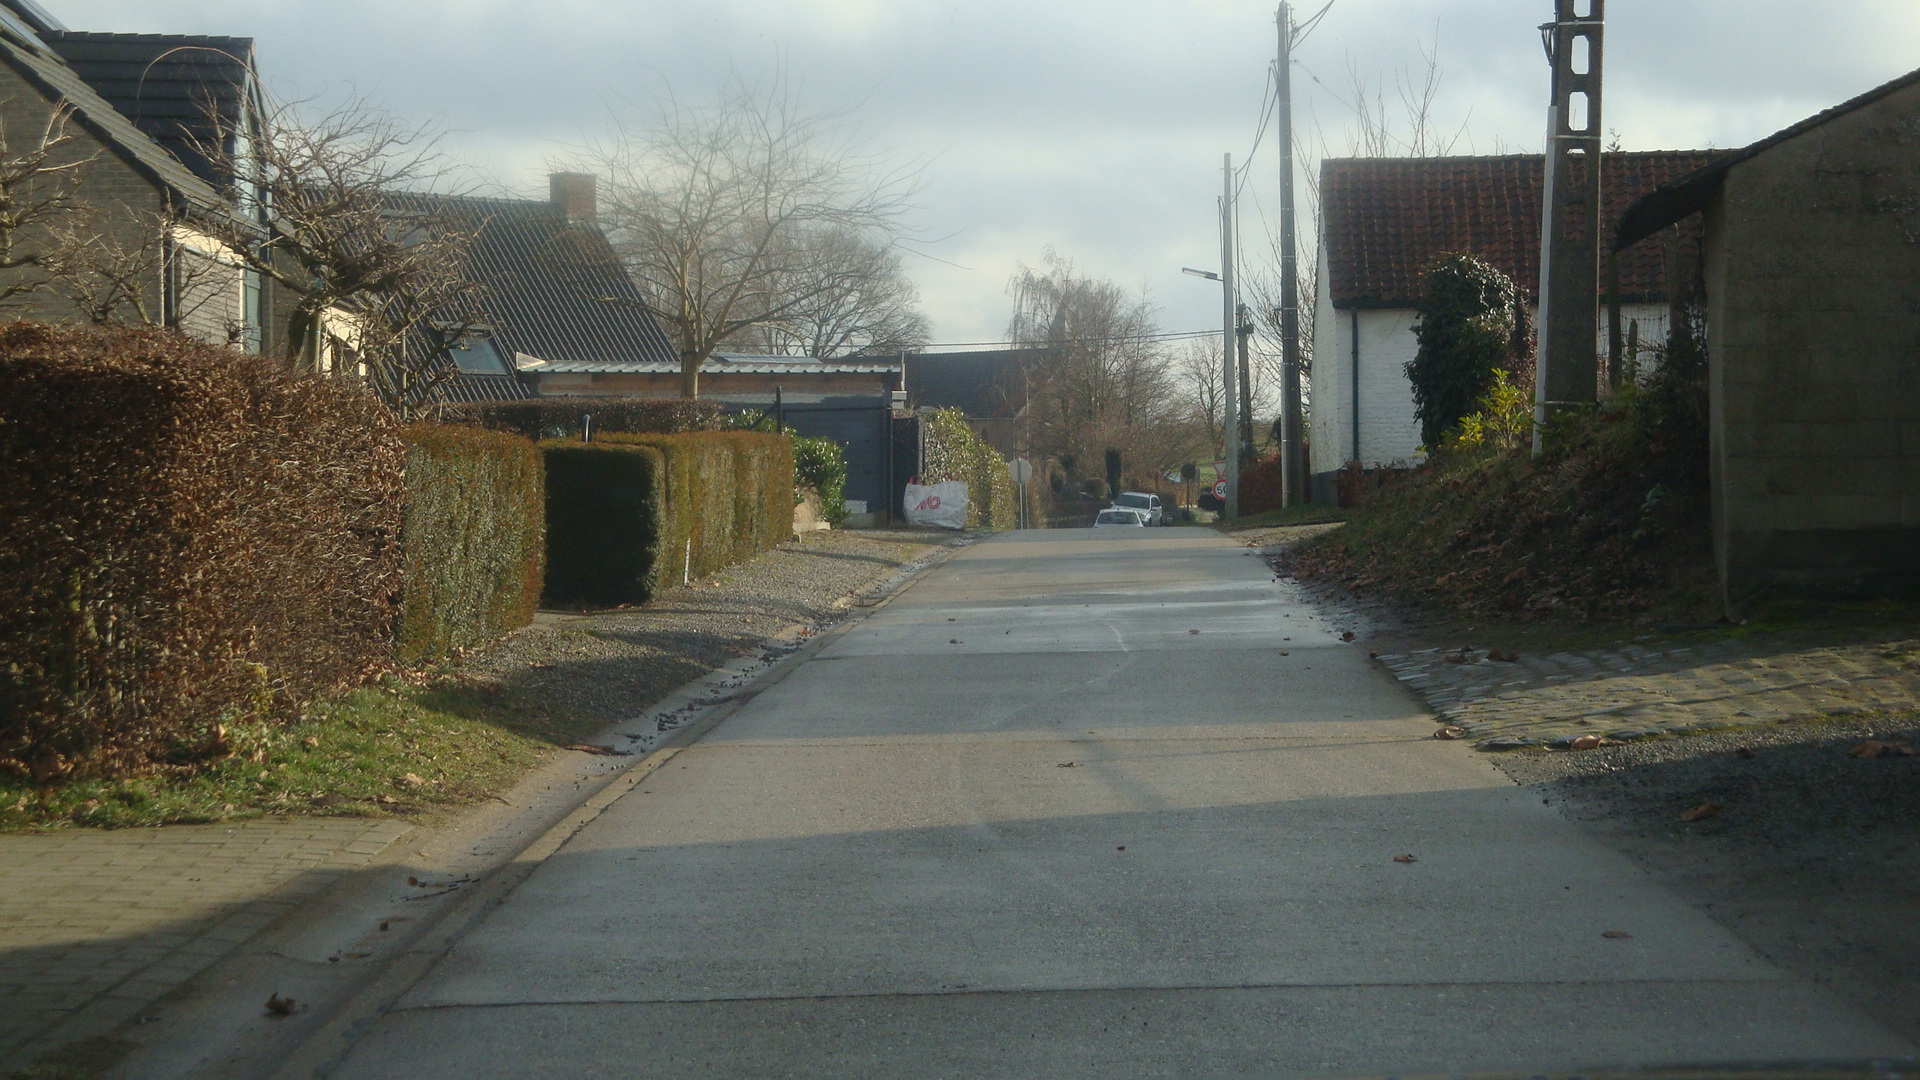 42-Bischoppenstraat-Schoolstraat-RD.JPG - 768,41 kB